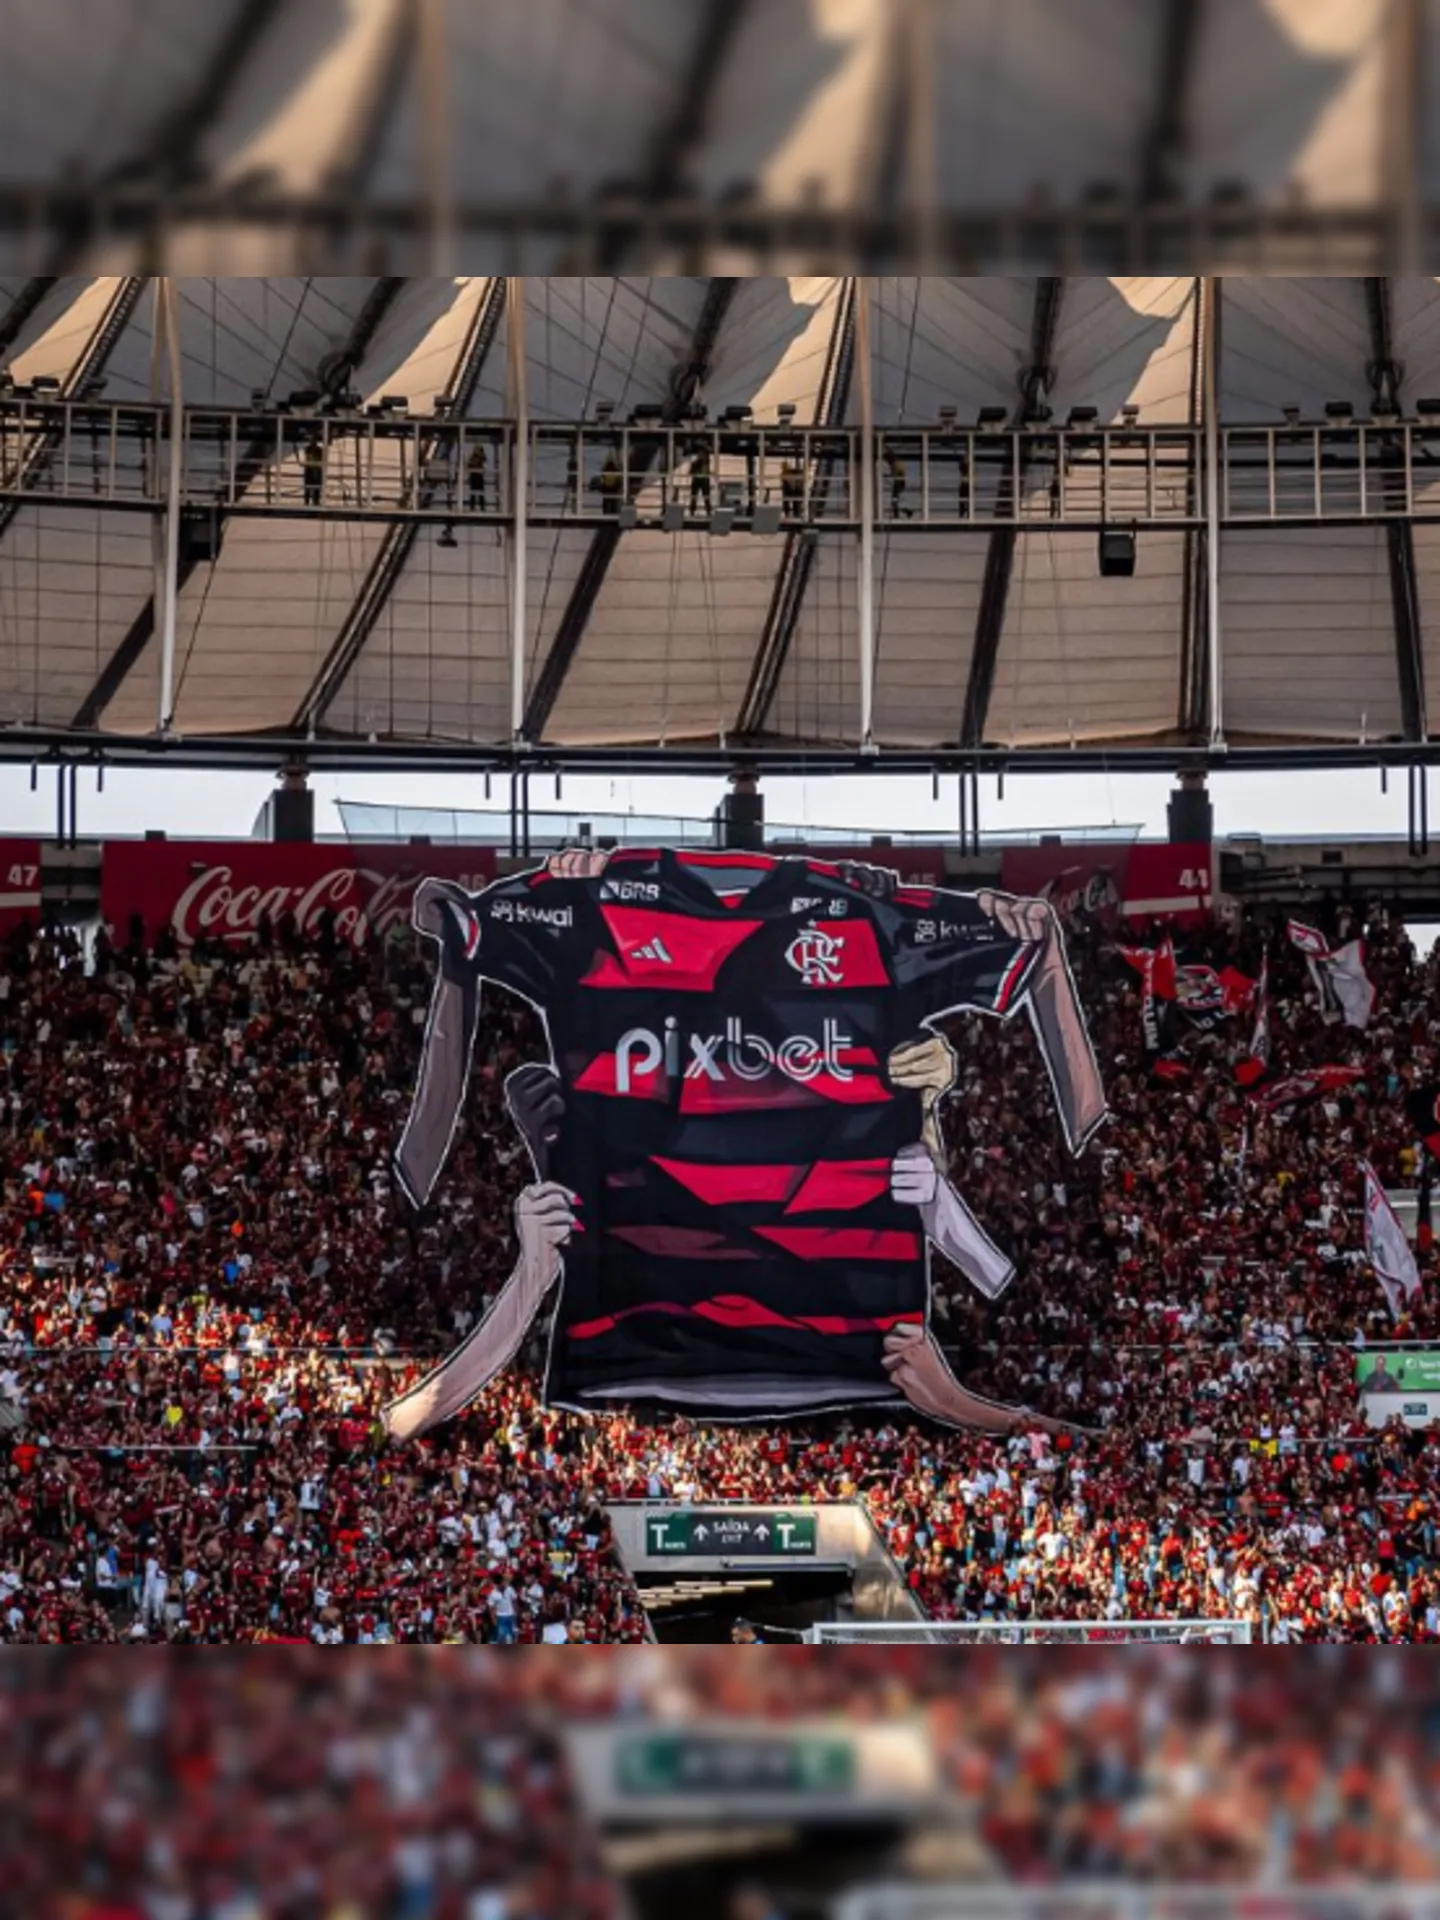 Desde o início, o Flamengo mostrou controle e determinação